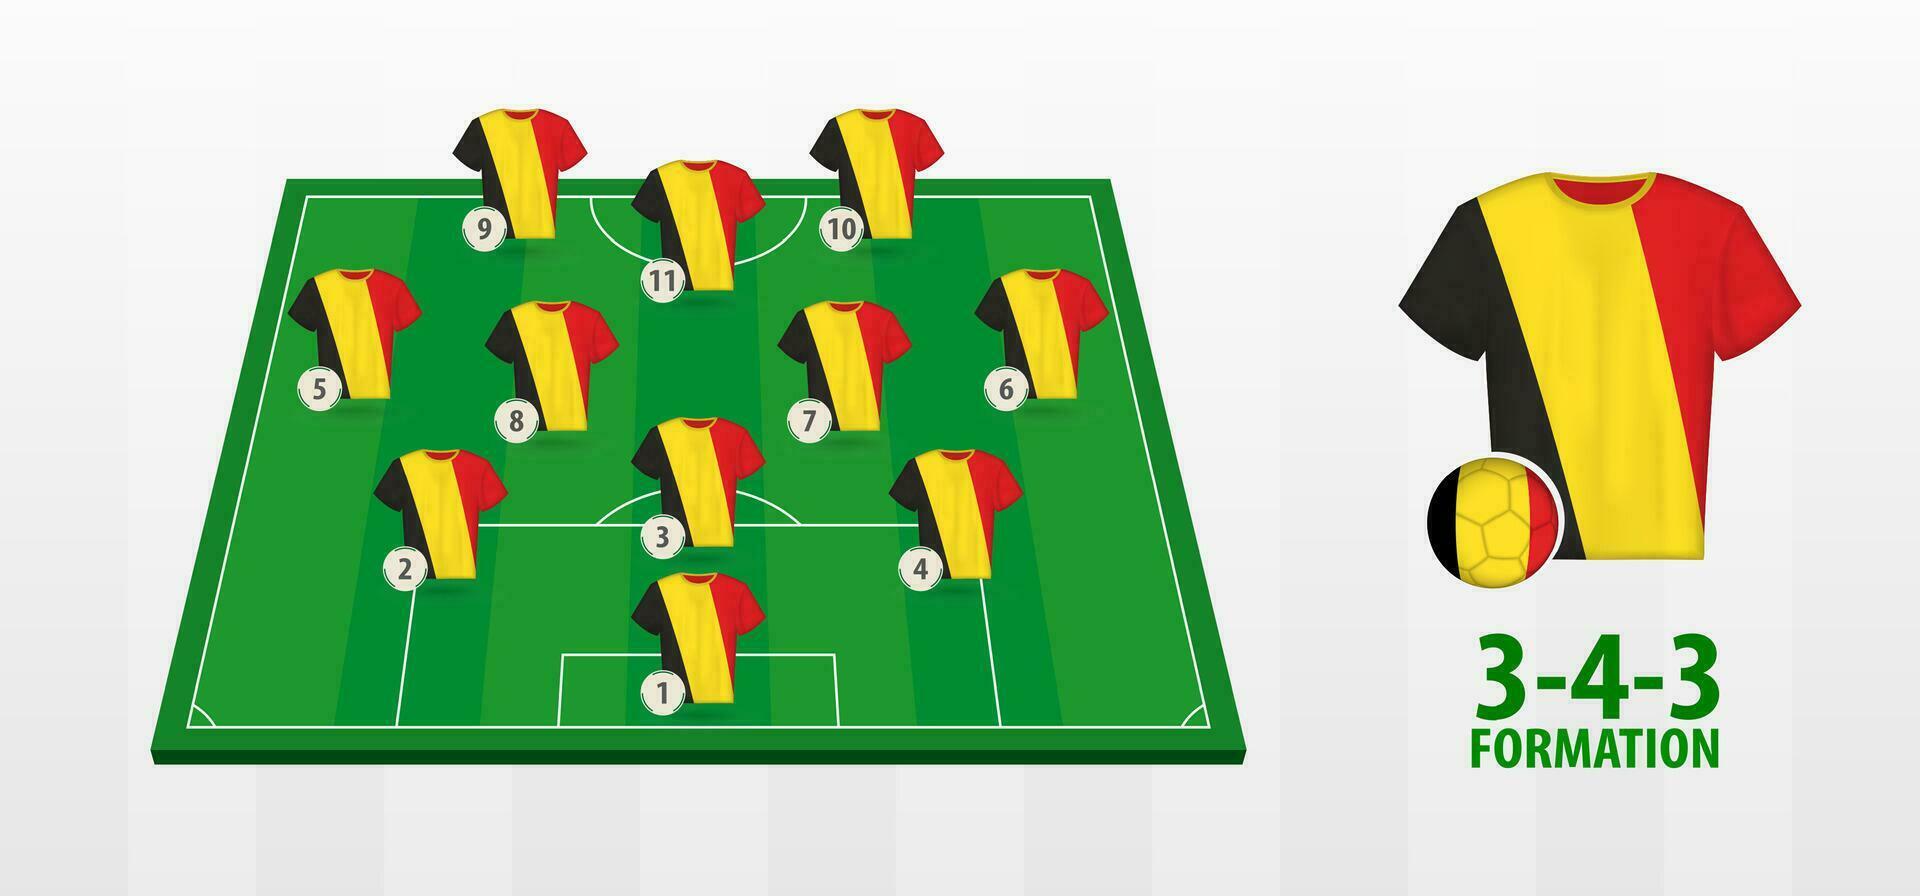 Bélgica nacional futebol equipe formação em futebol campo. vetor